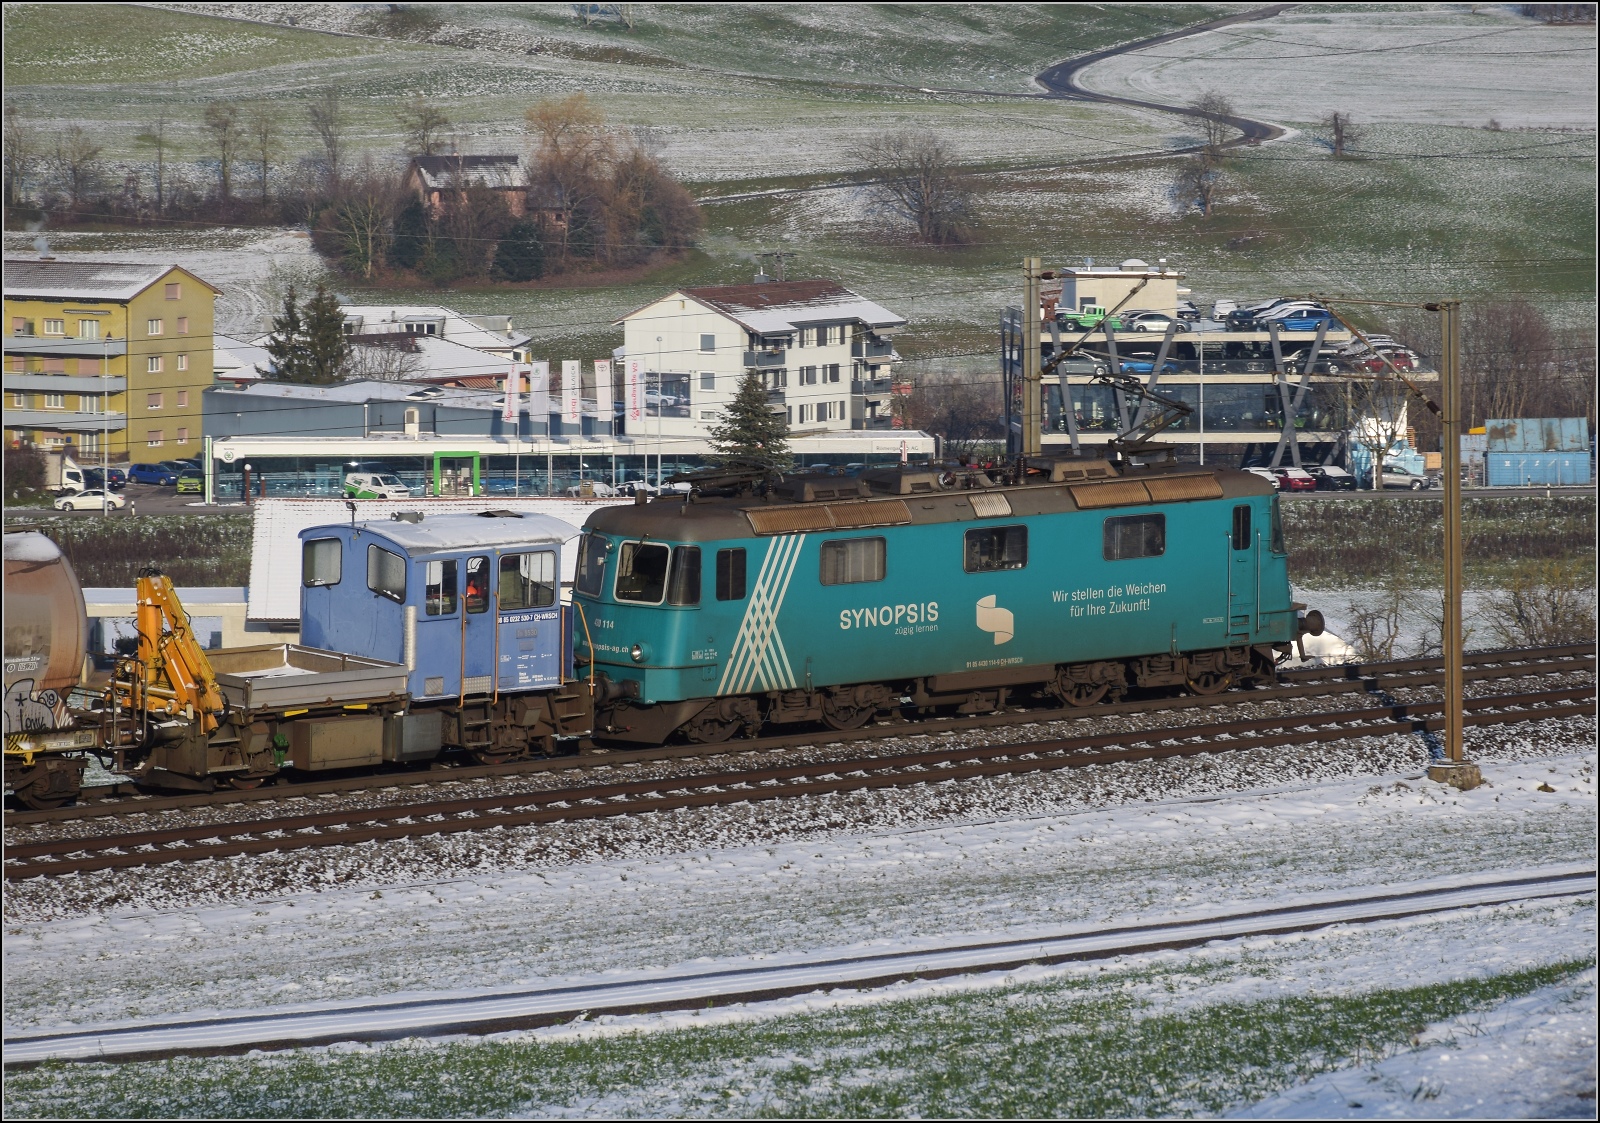 Re 430 115 von WRS mit Synopsis-Werbung schleppt die Rangierhilfe Tm III 9530 mit über den Bözberg. Frick, Dezember 2022.